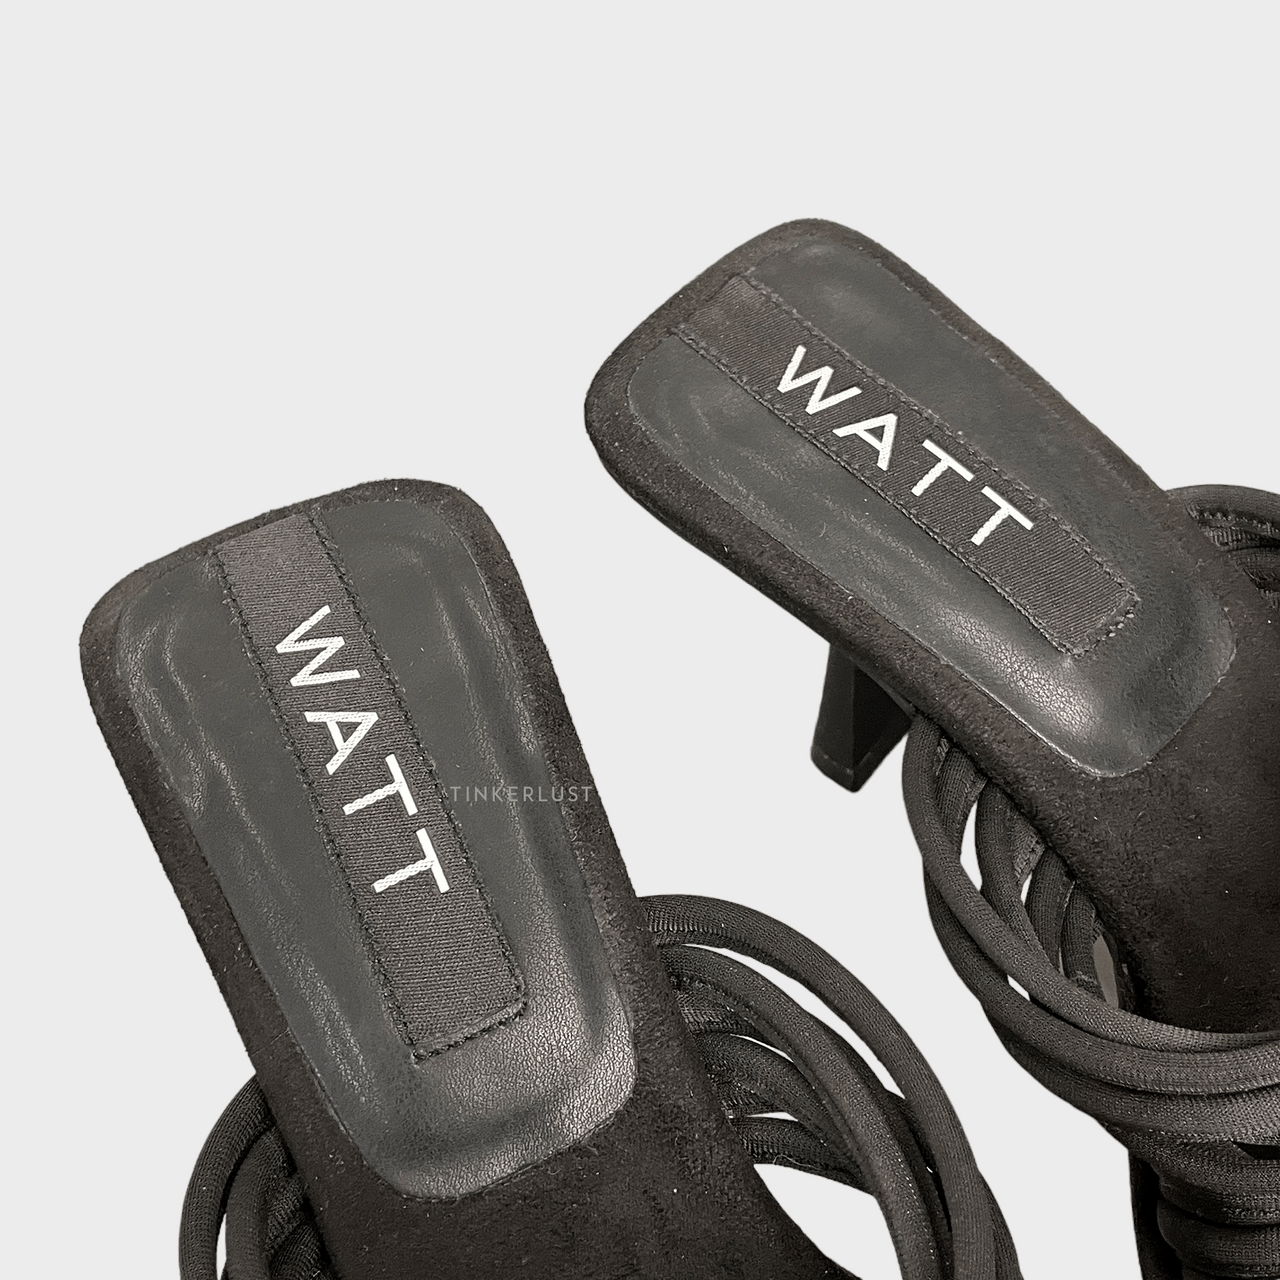 Watt-Walk The Talk Black Heels